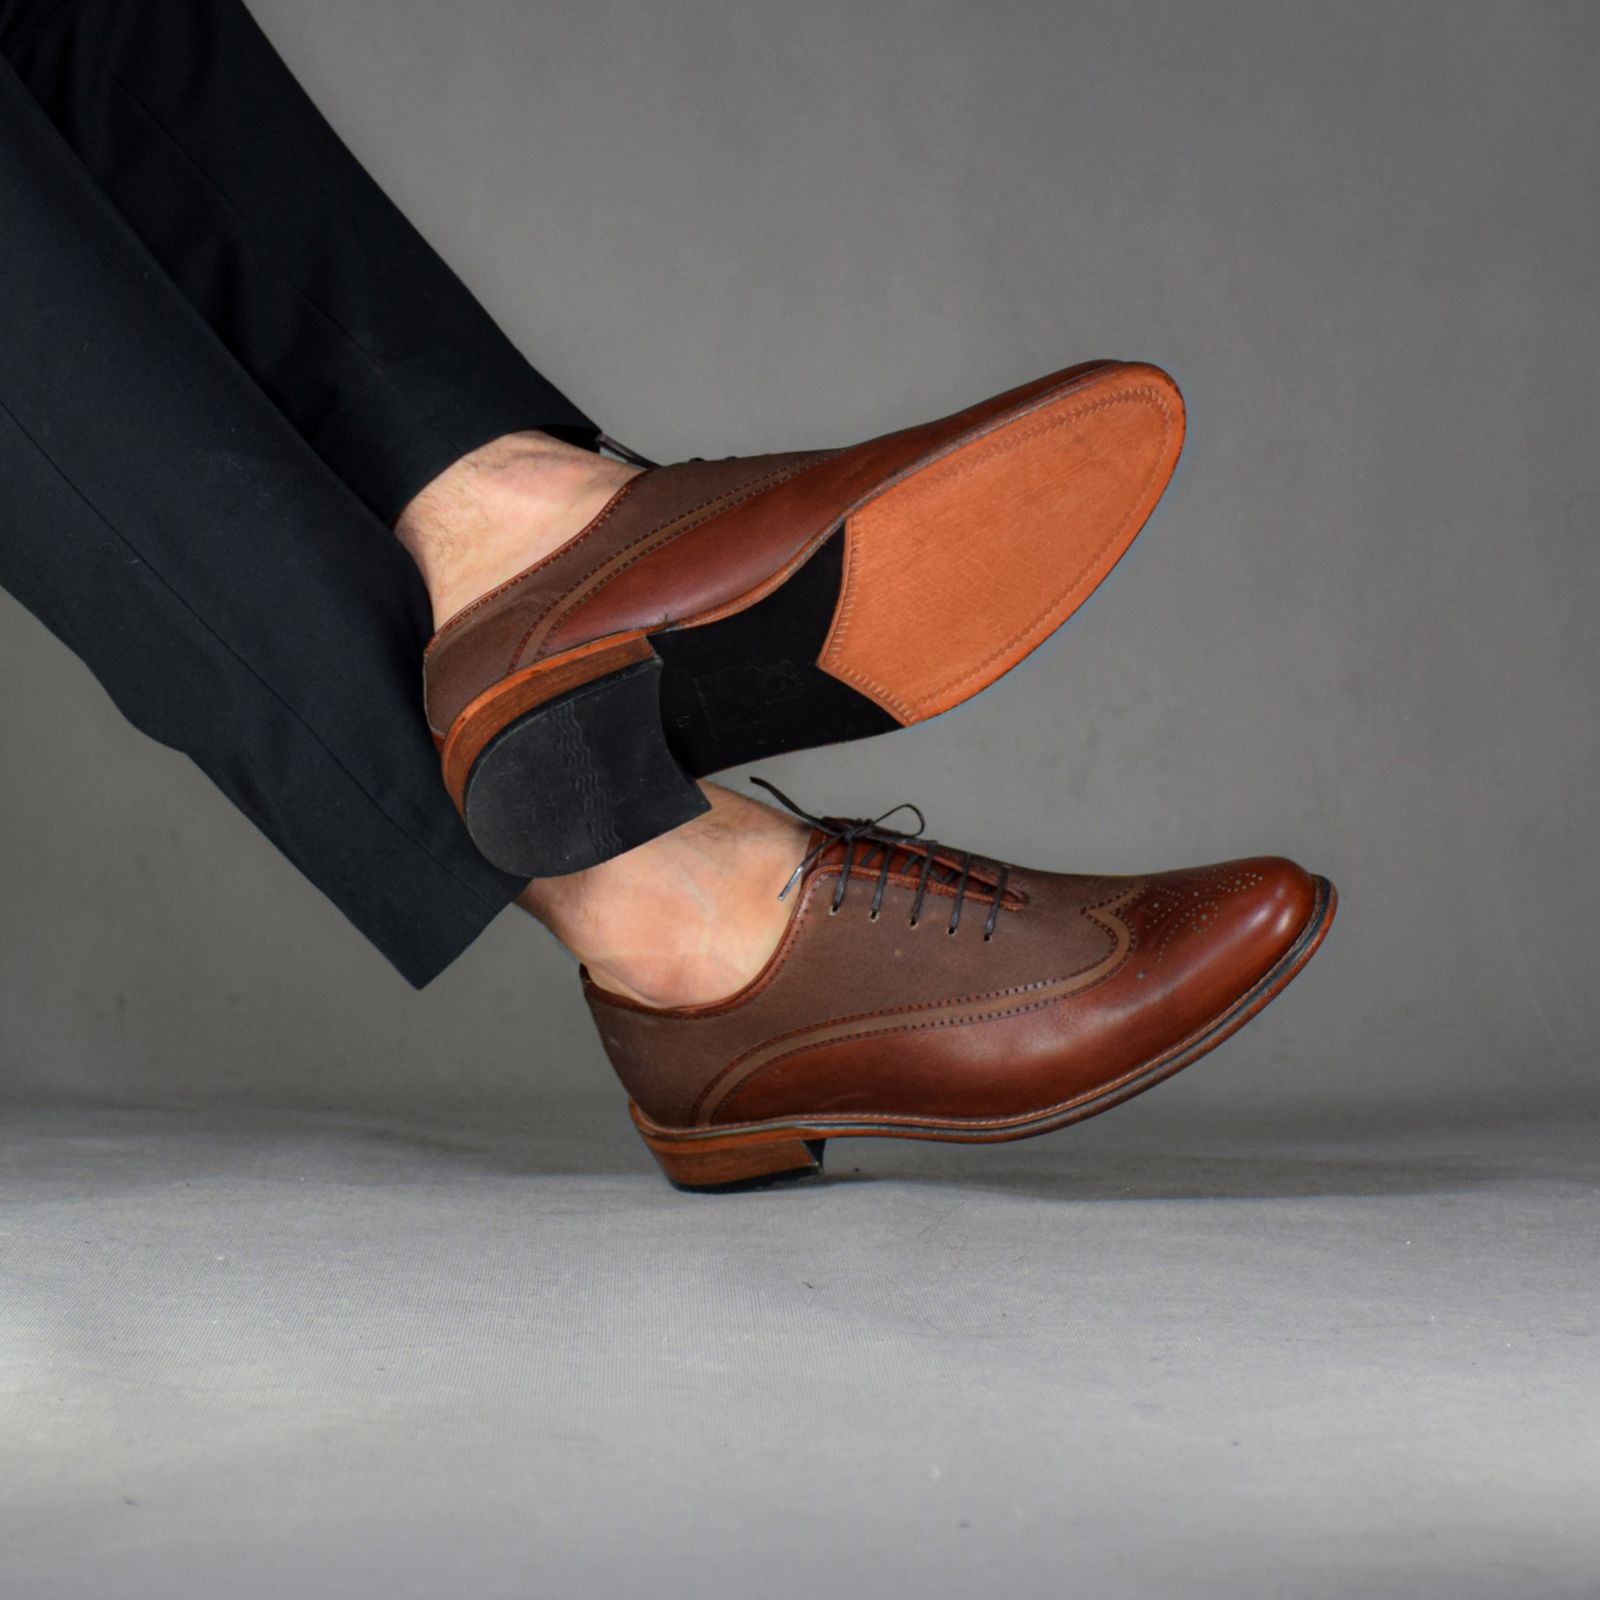 کفش مردانه کرمانی مدل تمام چرم طبیعی دستدوز کد 1037 رنگ قهوه ای -  - 3